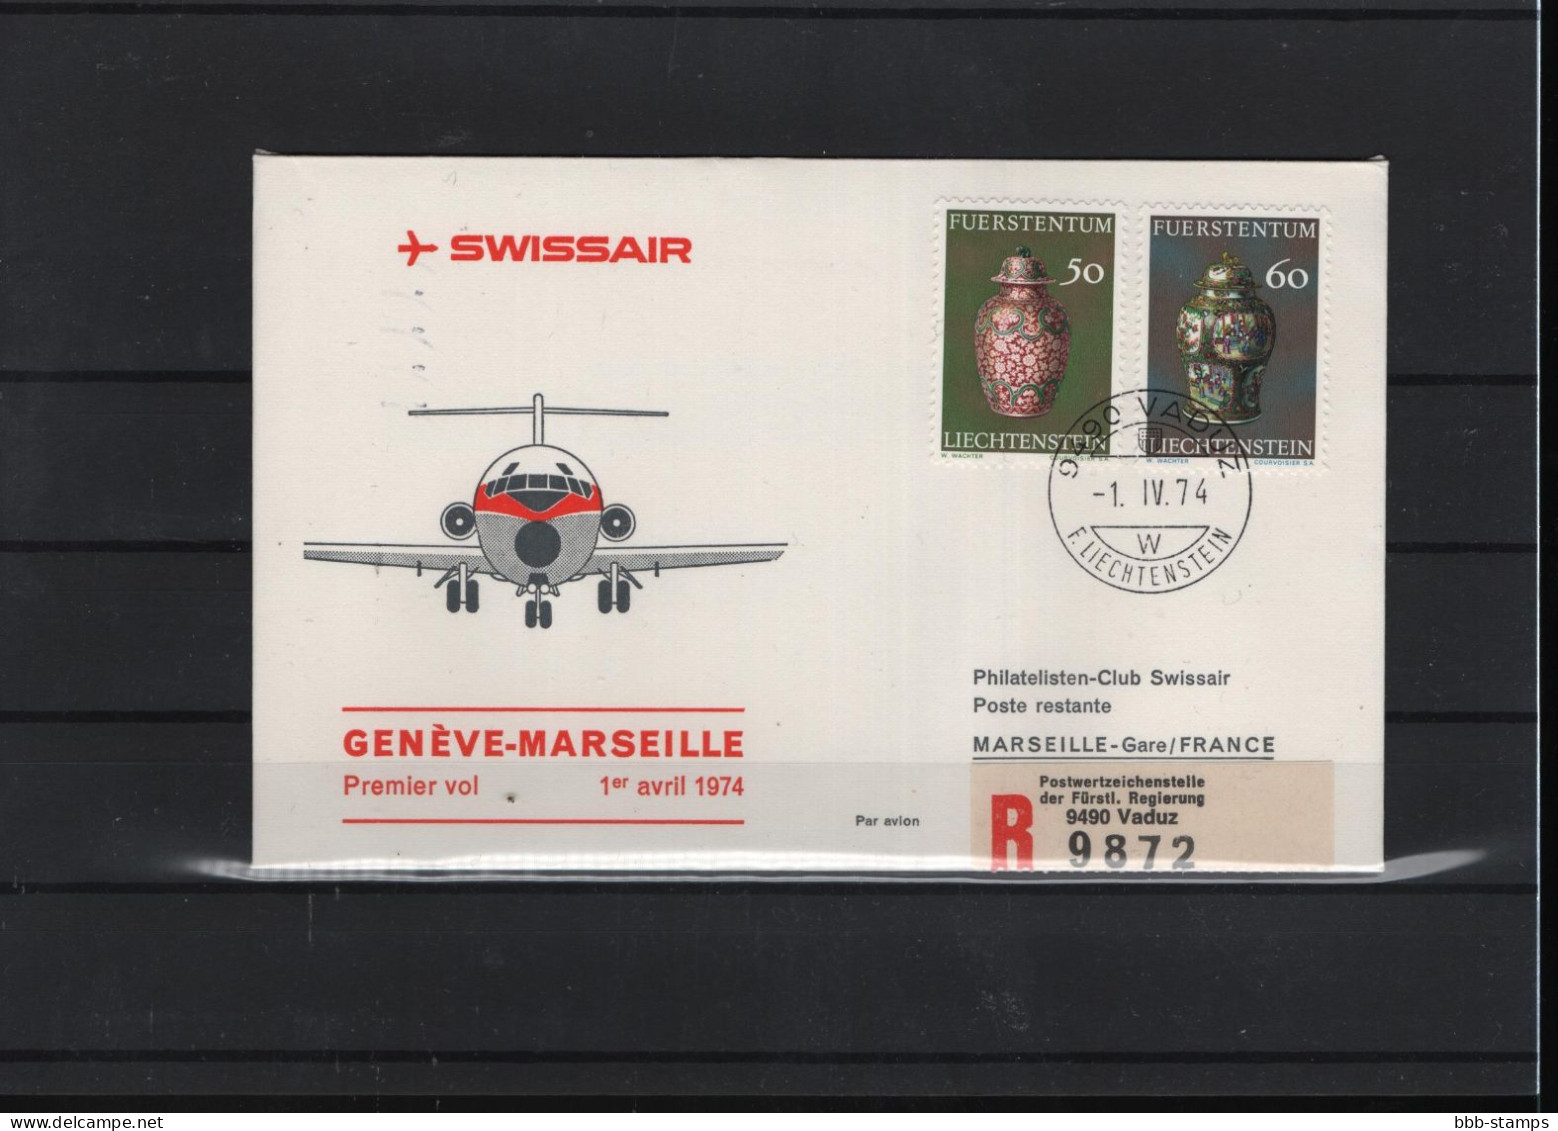 Schweiz Luftpost FFC Swissair  1.4.1974 Genf - Marseille - First Flight Covers